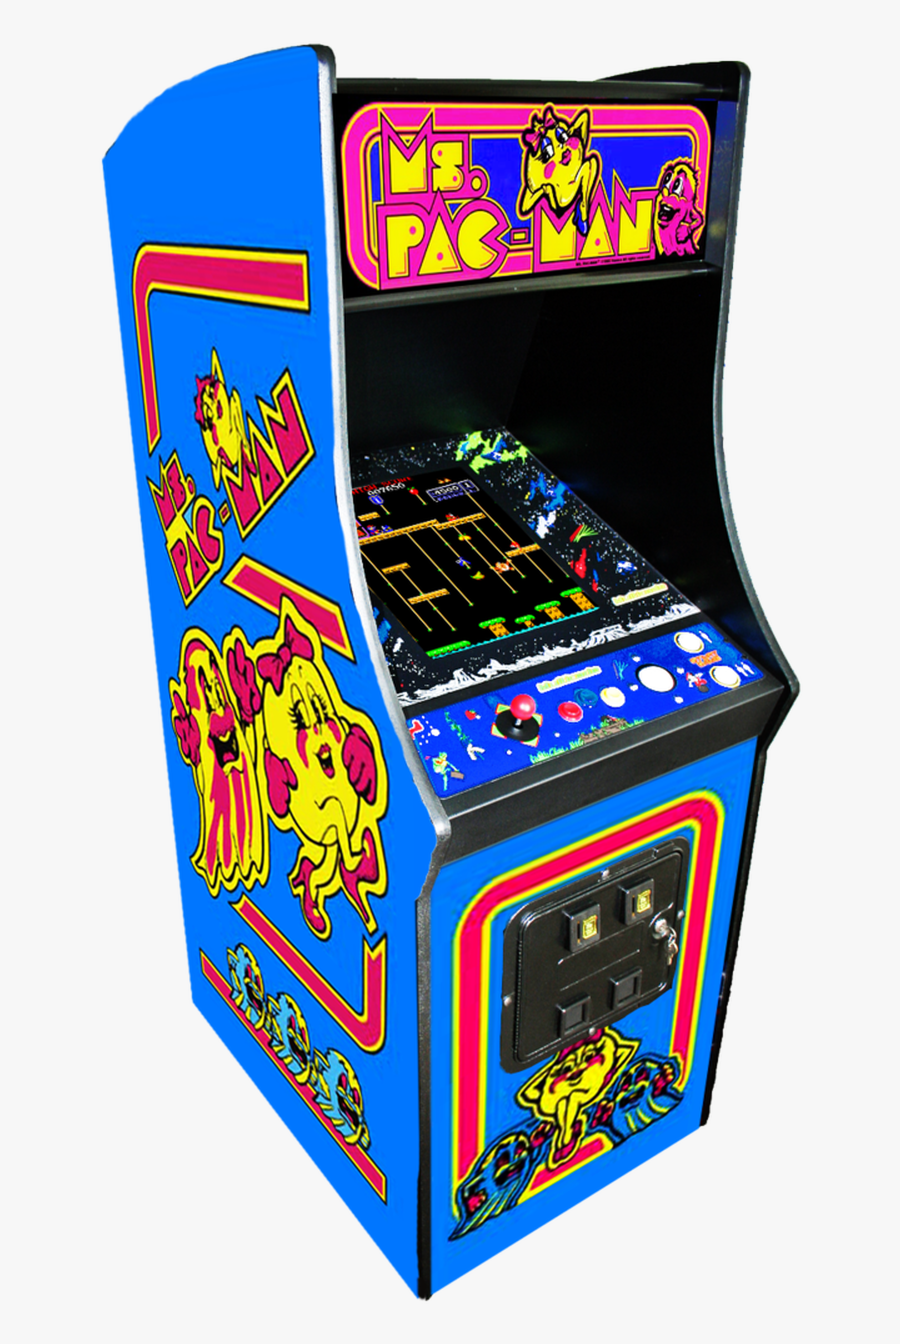 Игровые автоматы 90 годов igrovieavtomaty90 org ru. Аркадный автомат Пакмен. Игровой аппарат Pacman. Пакман игровой автомат 80 х. Игровой автомат Мисс Пакман.